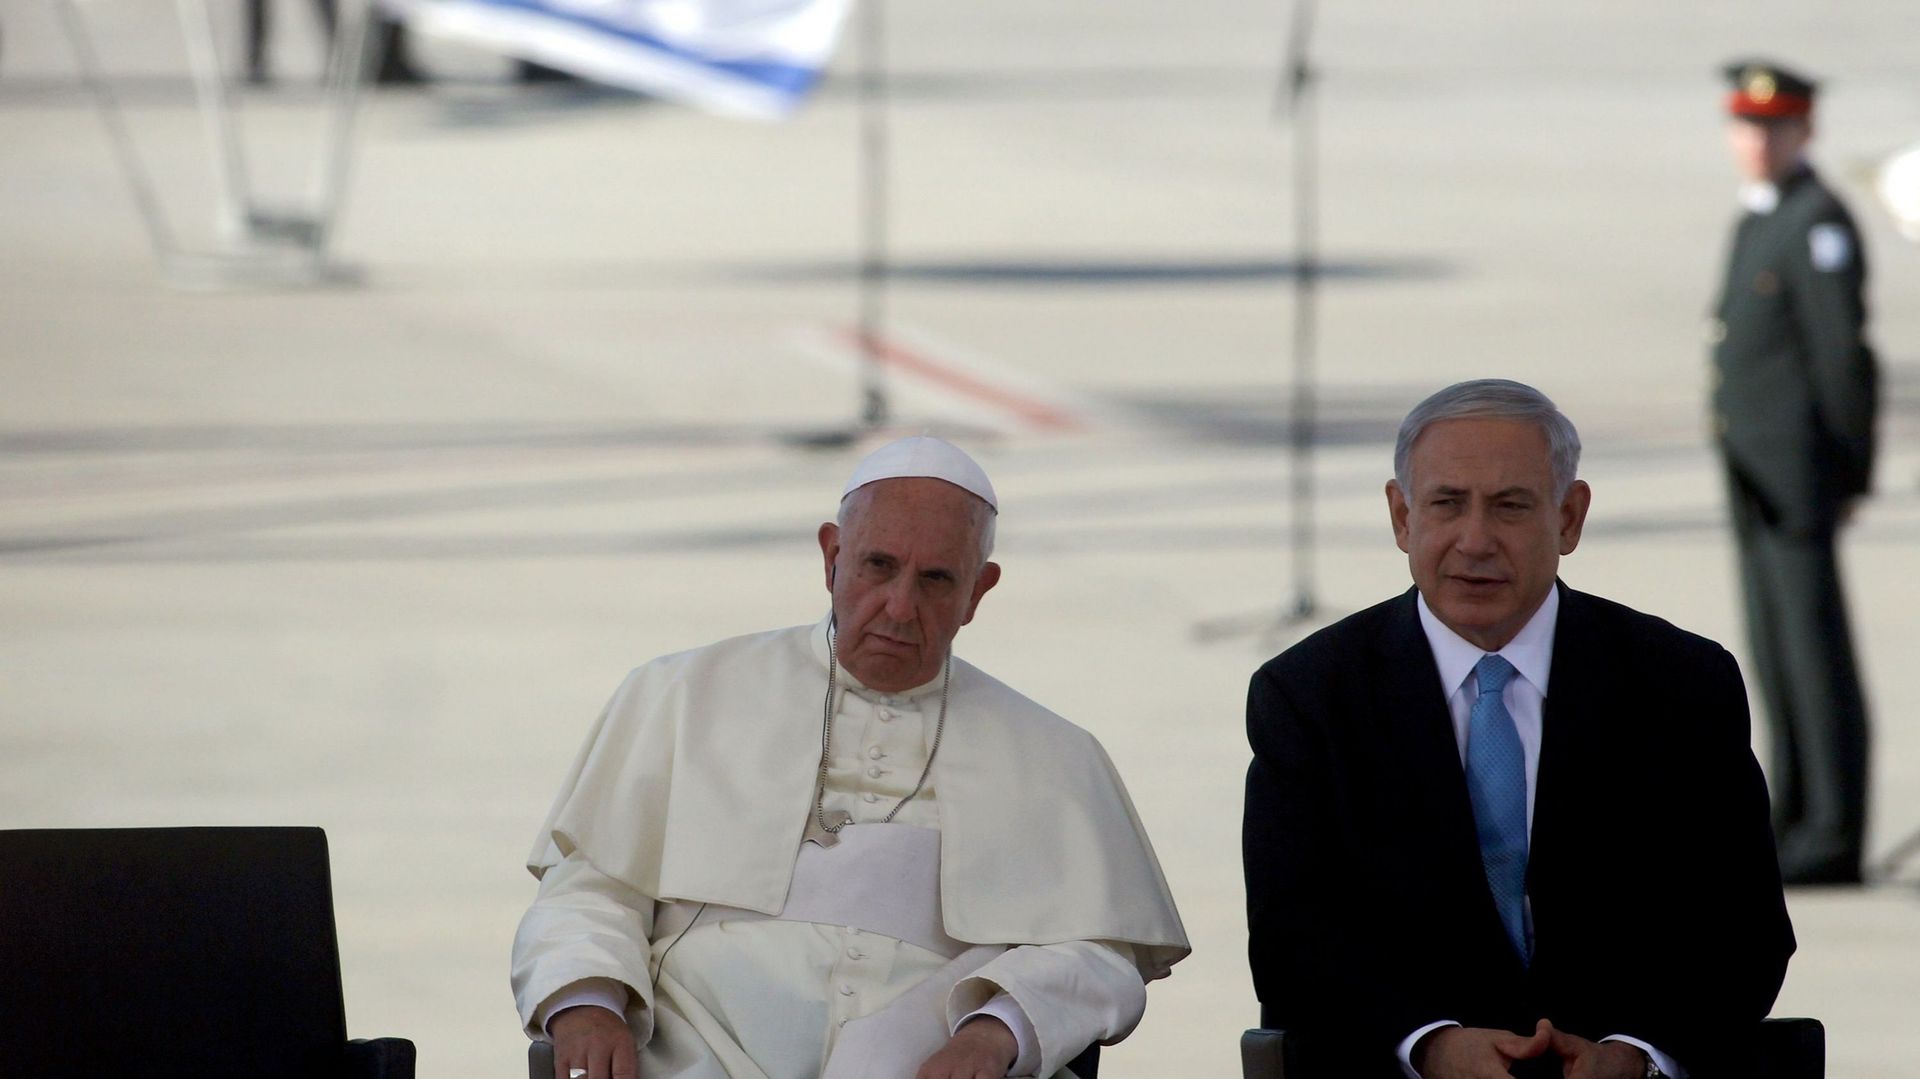 Le Premier ministre israélien Benjamin Netanyahu a salué les prises de position de François contre l'antisémitisme